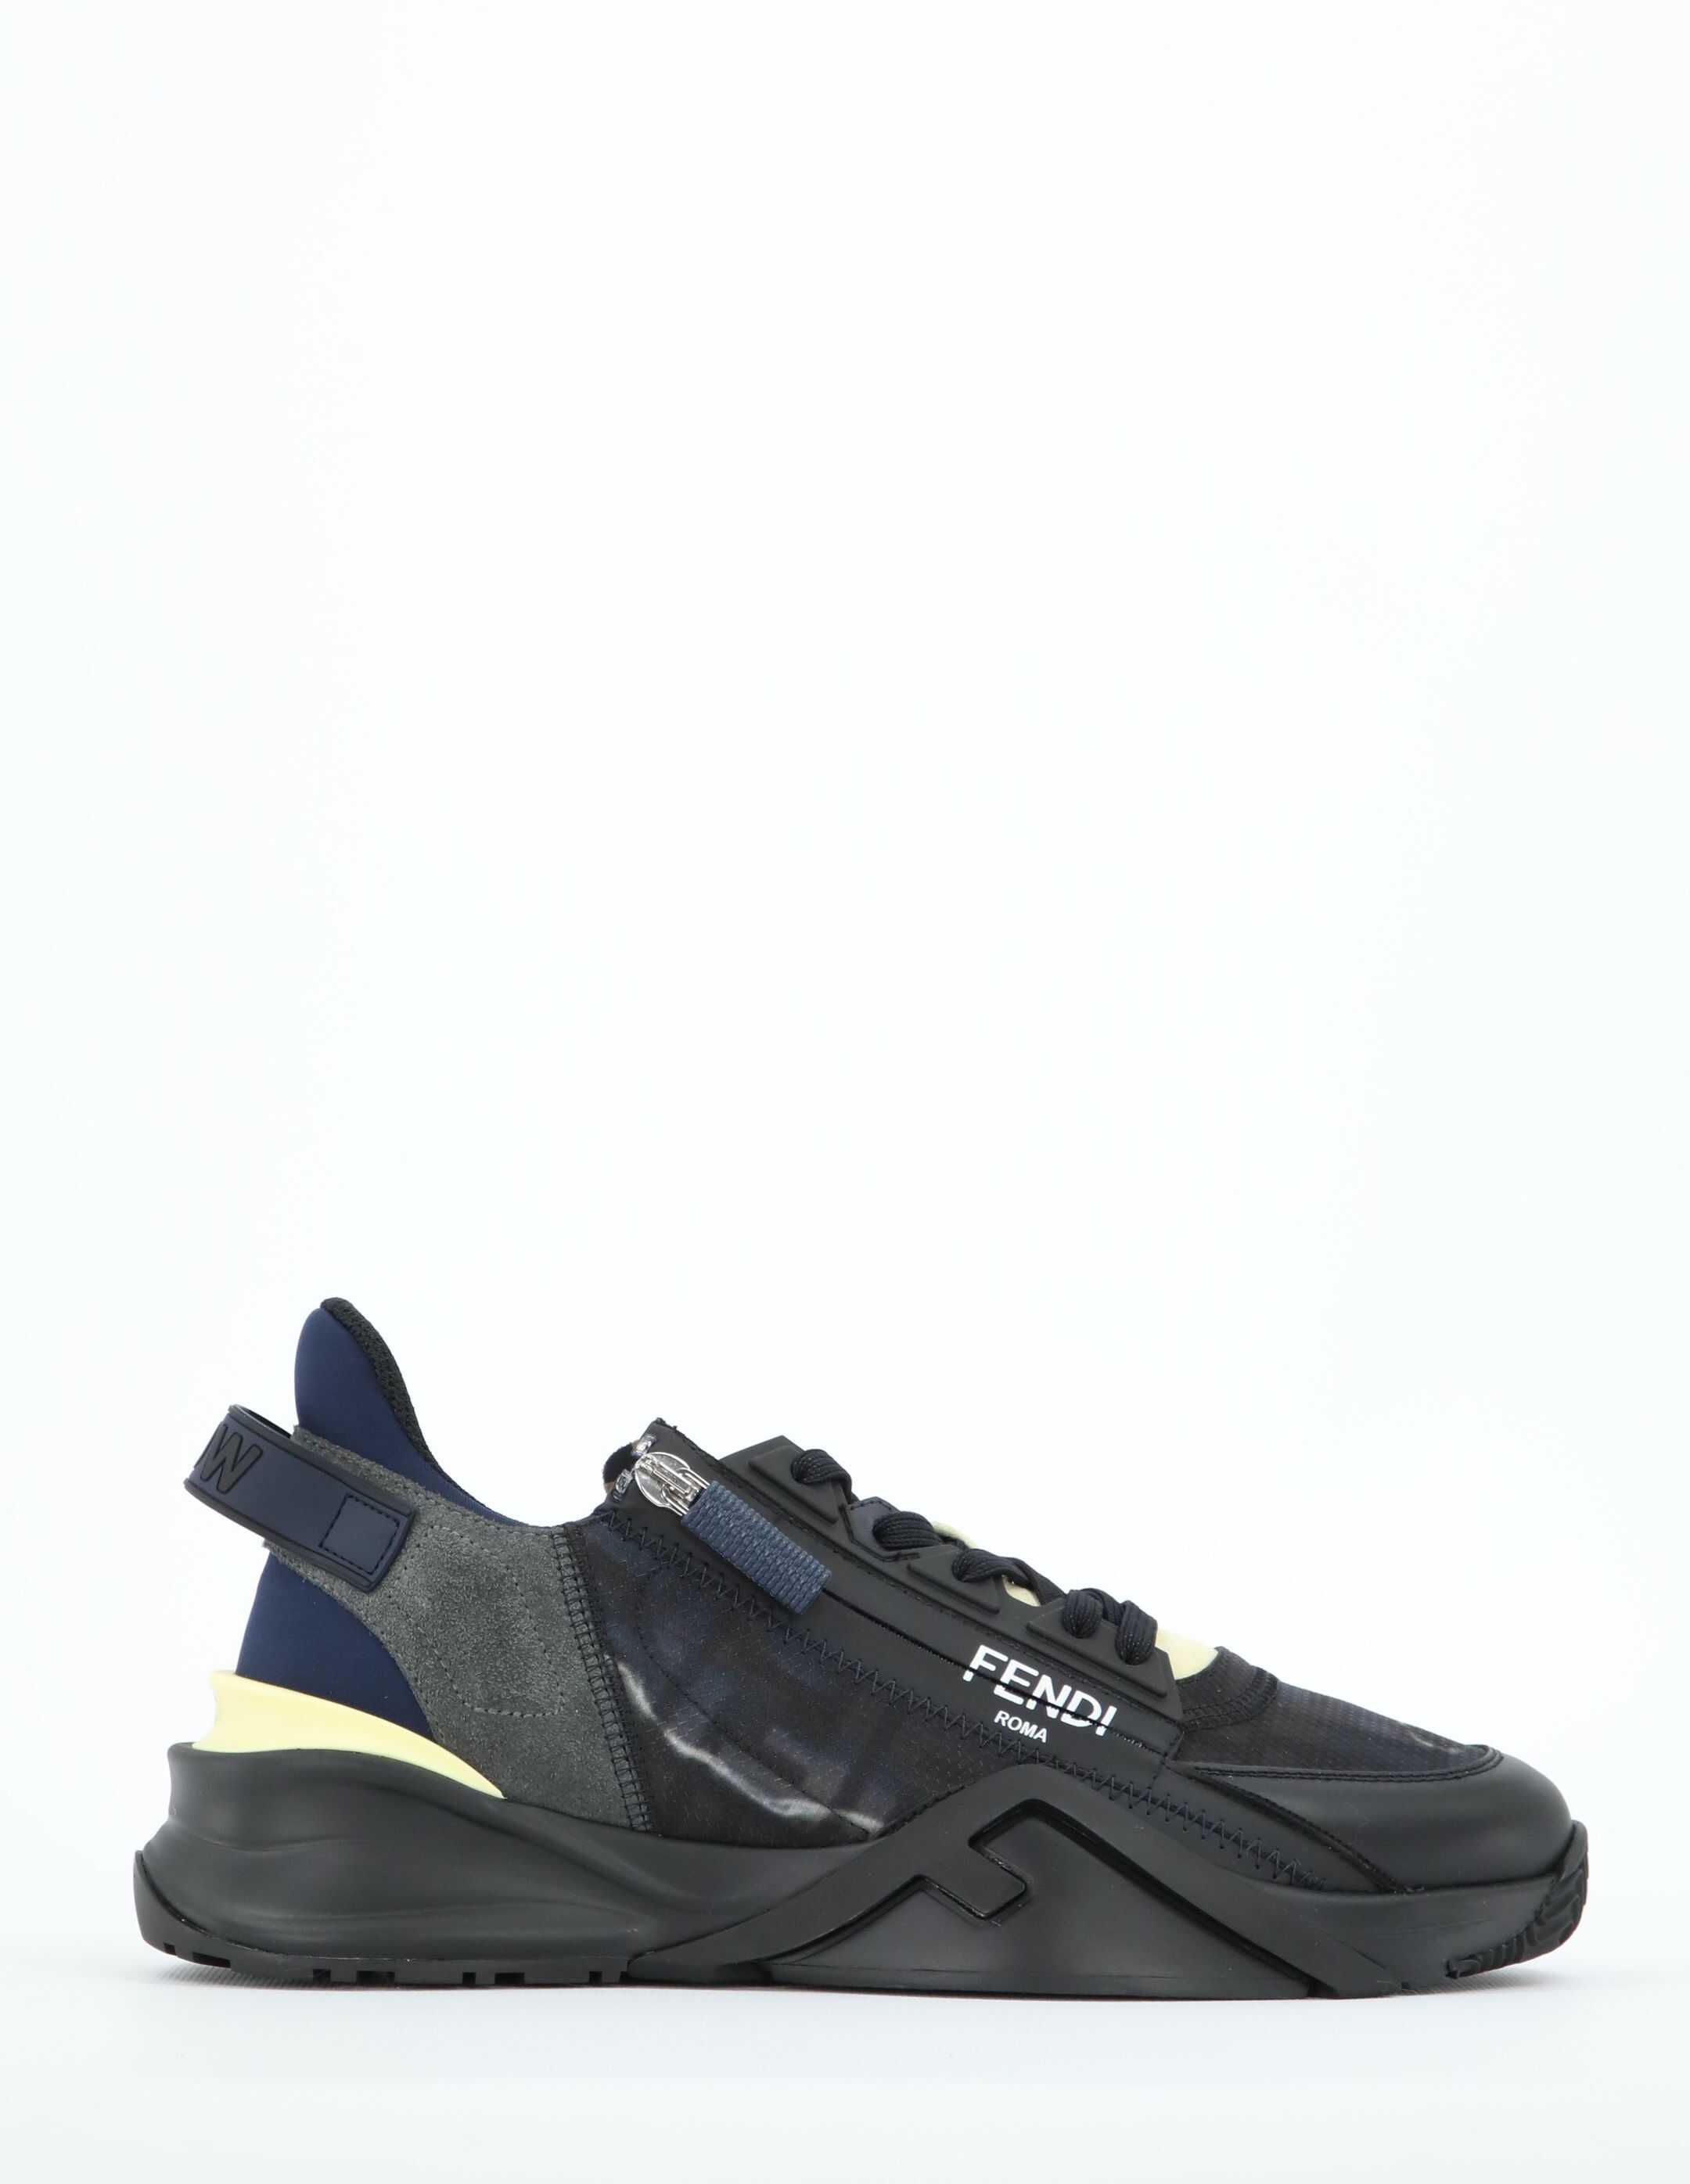 Fendi Fendi Flow Sneakers 7E1519 AHIJ N/A